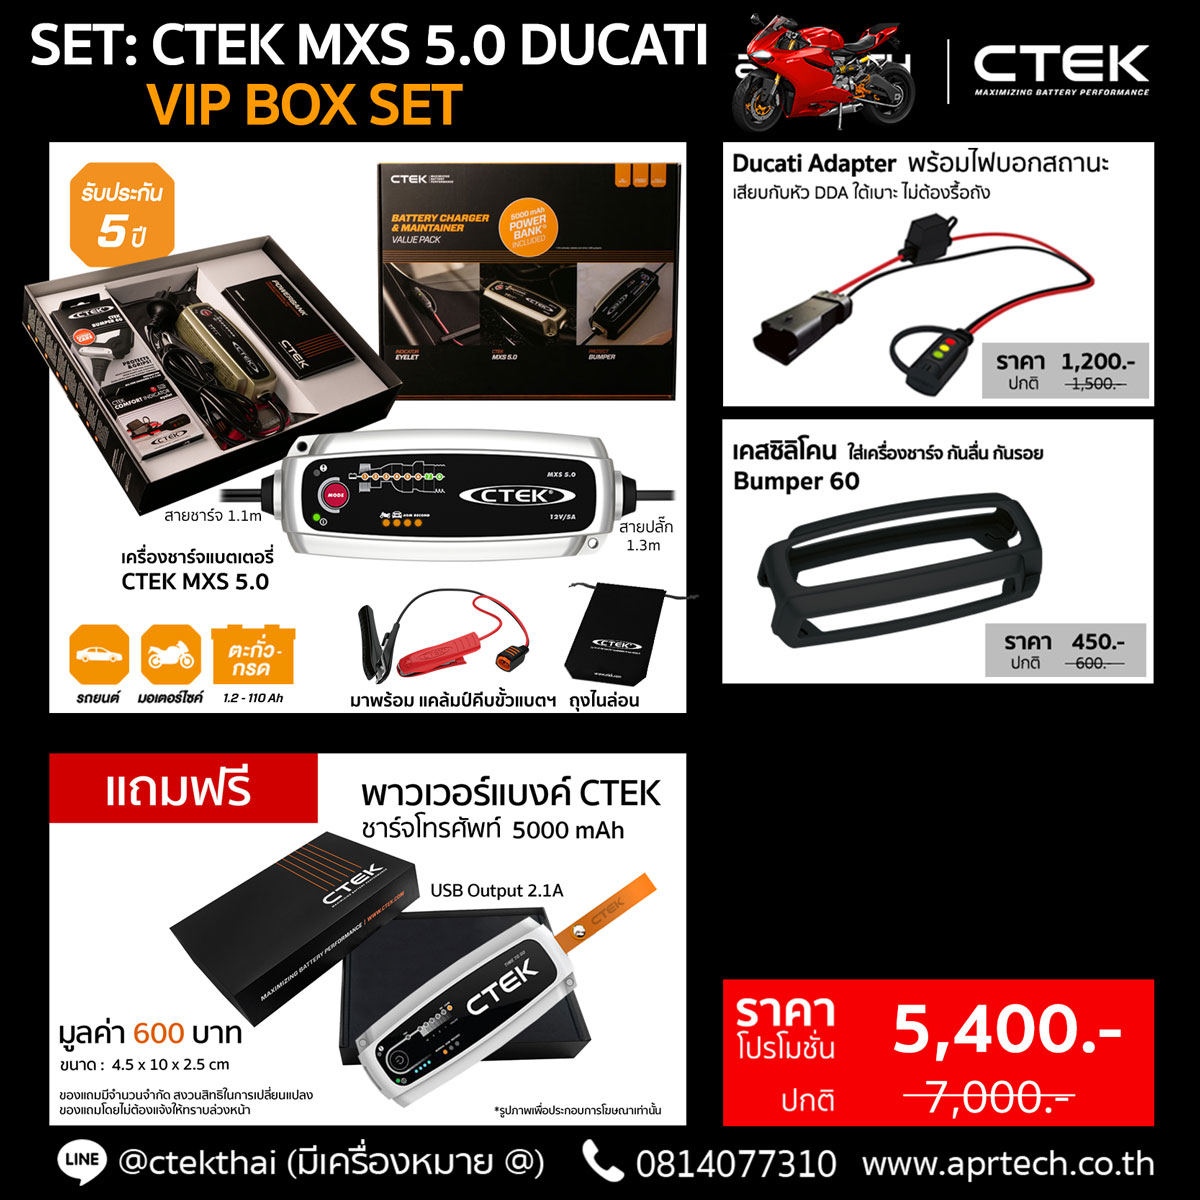 SET CTEK MXS 5.0 Ducati VIP BOX SET (CTEK MXS 5.0 + Ducati DDA Adapter + Bumper)